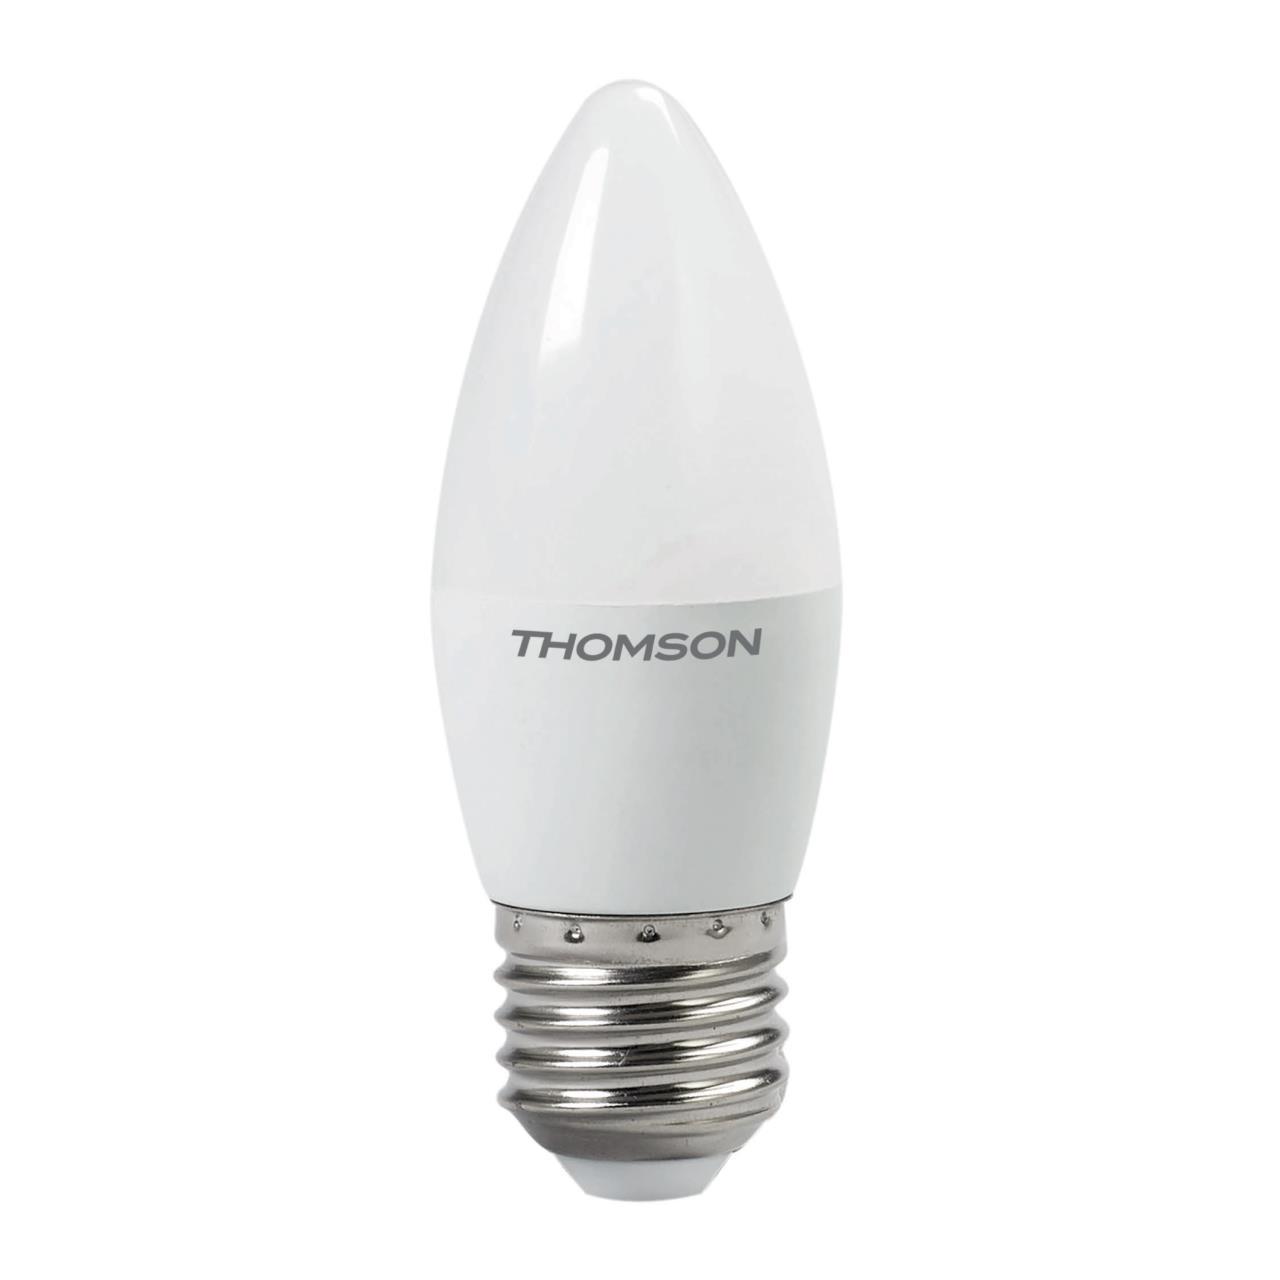 91252870 Лампа светодиодная TH-B2021 E27 54 В 8 Вт свеча матовая 640 Лм теплый белый свет STLM-0522394 THOMSON